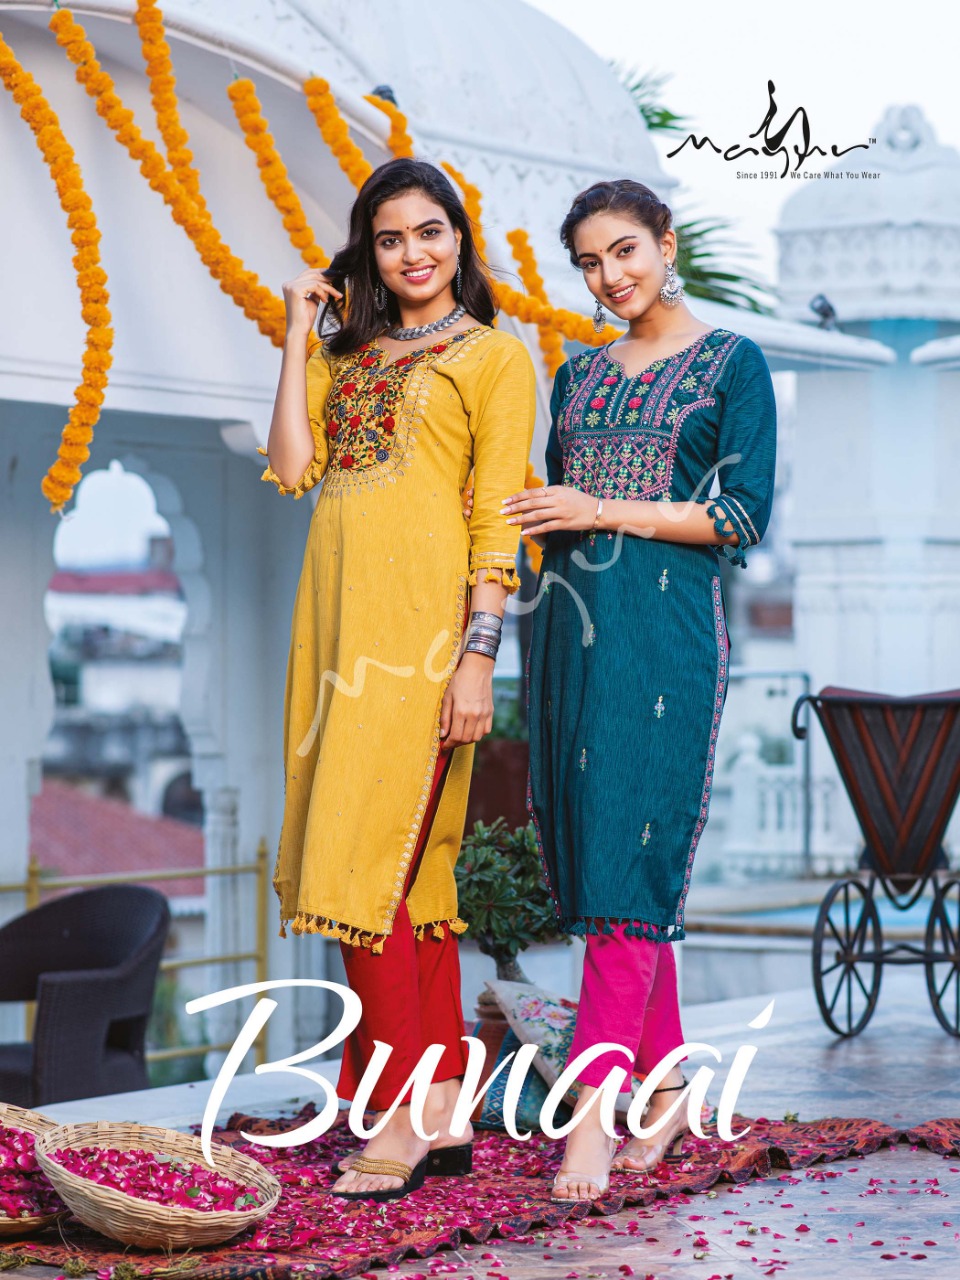 mayur bunaai rayon attractive kurti catalog